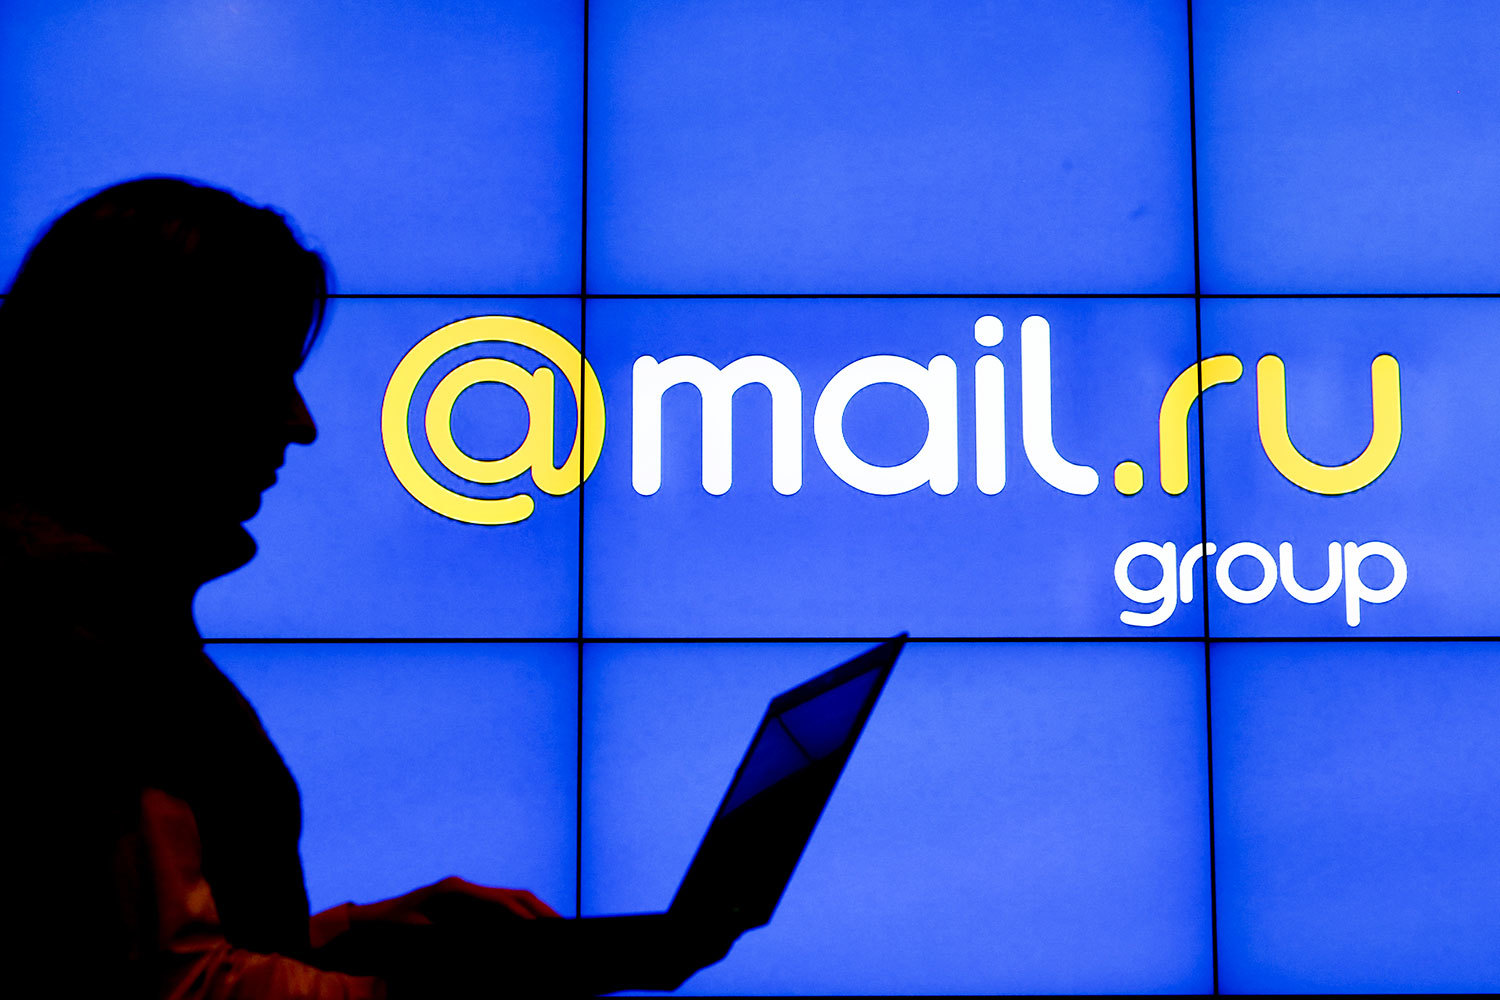 Microsoft-ն անջատել է Mail.Ru փոստն իր սերվերներից